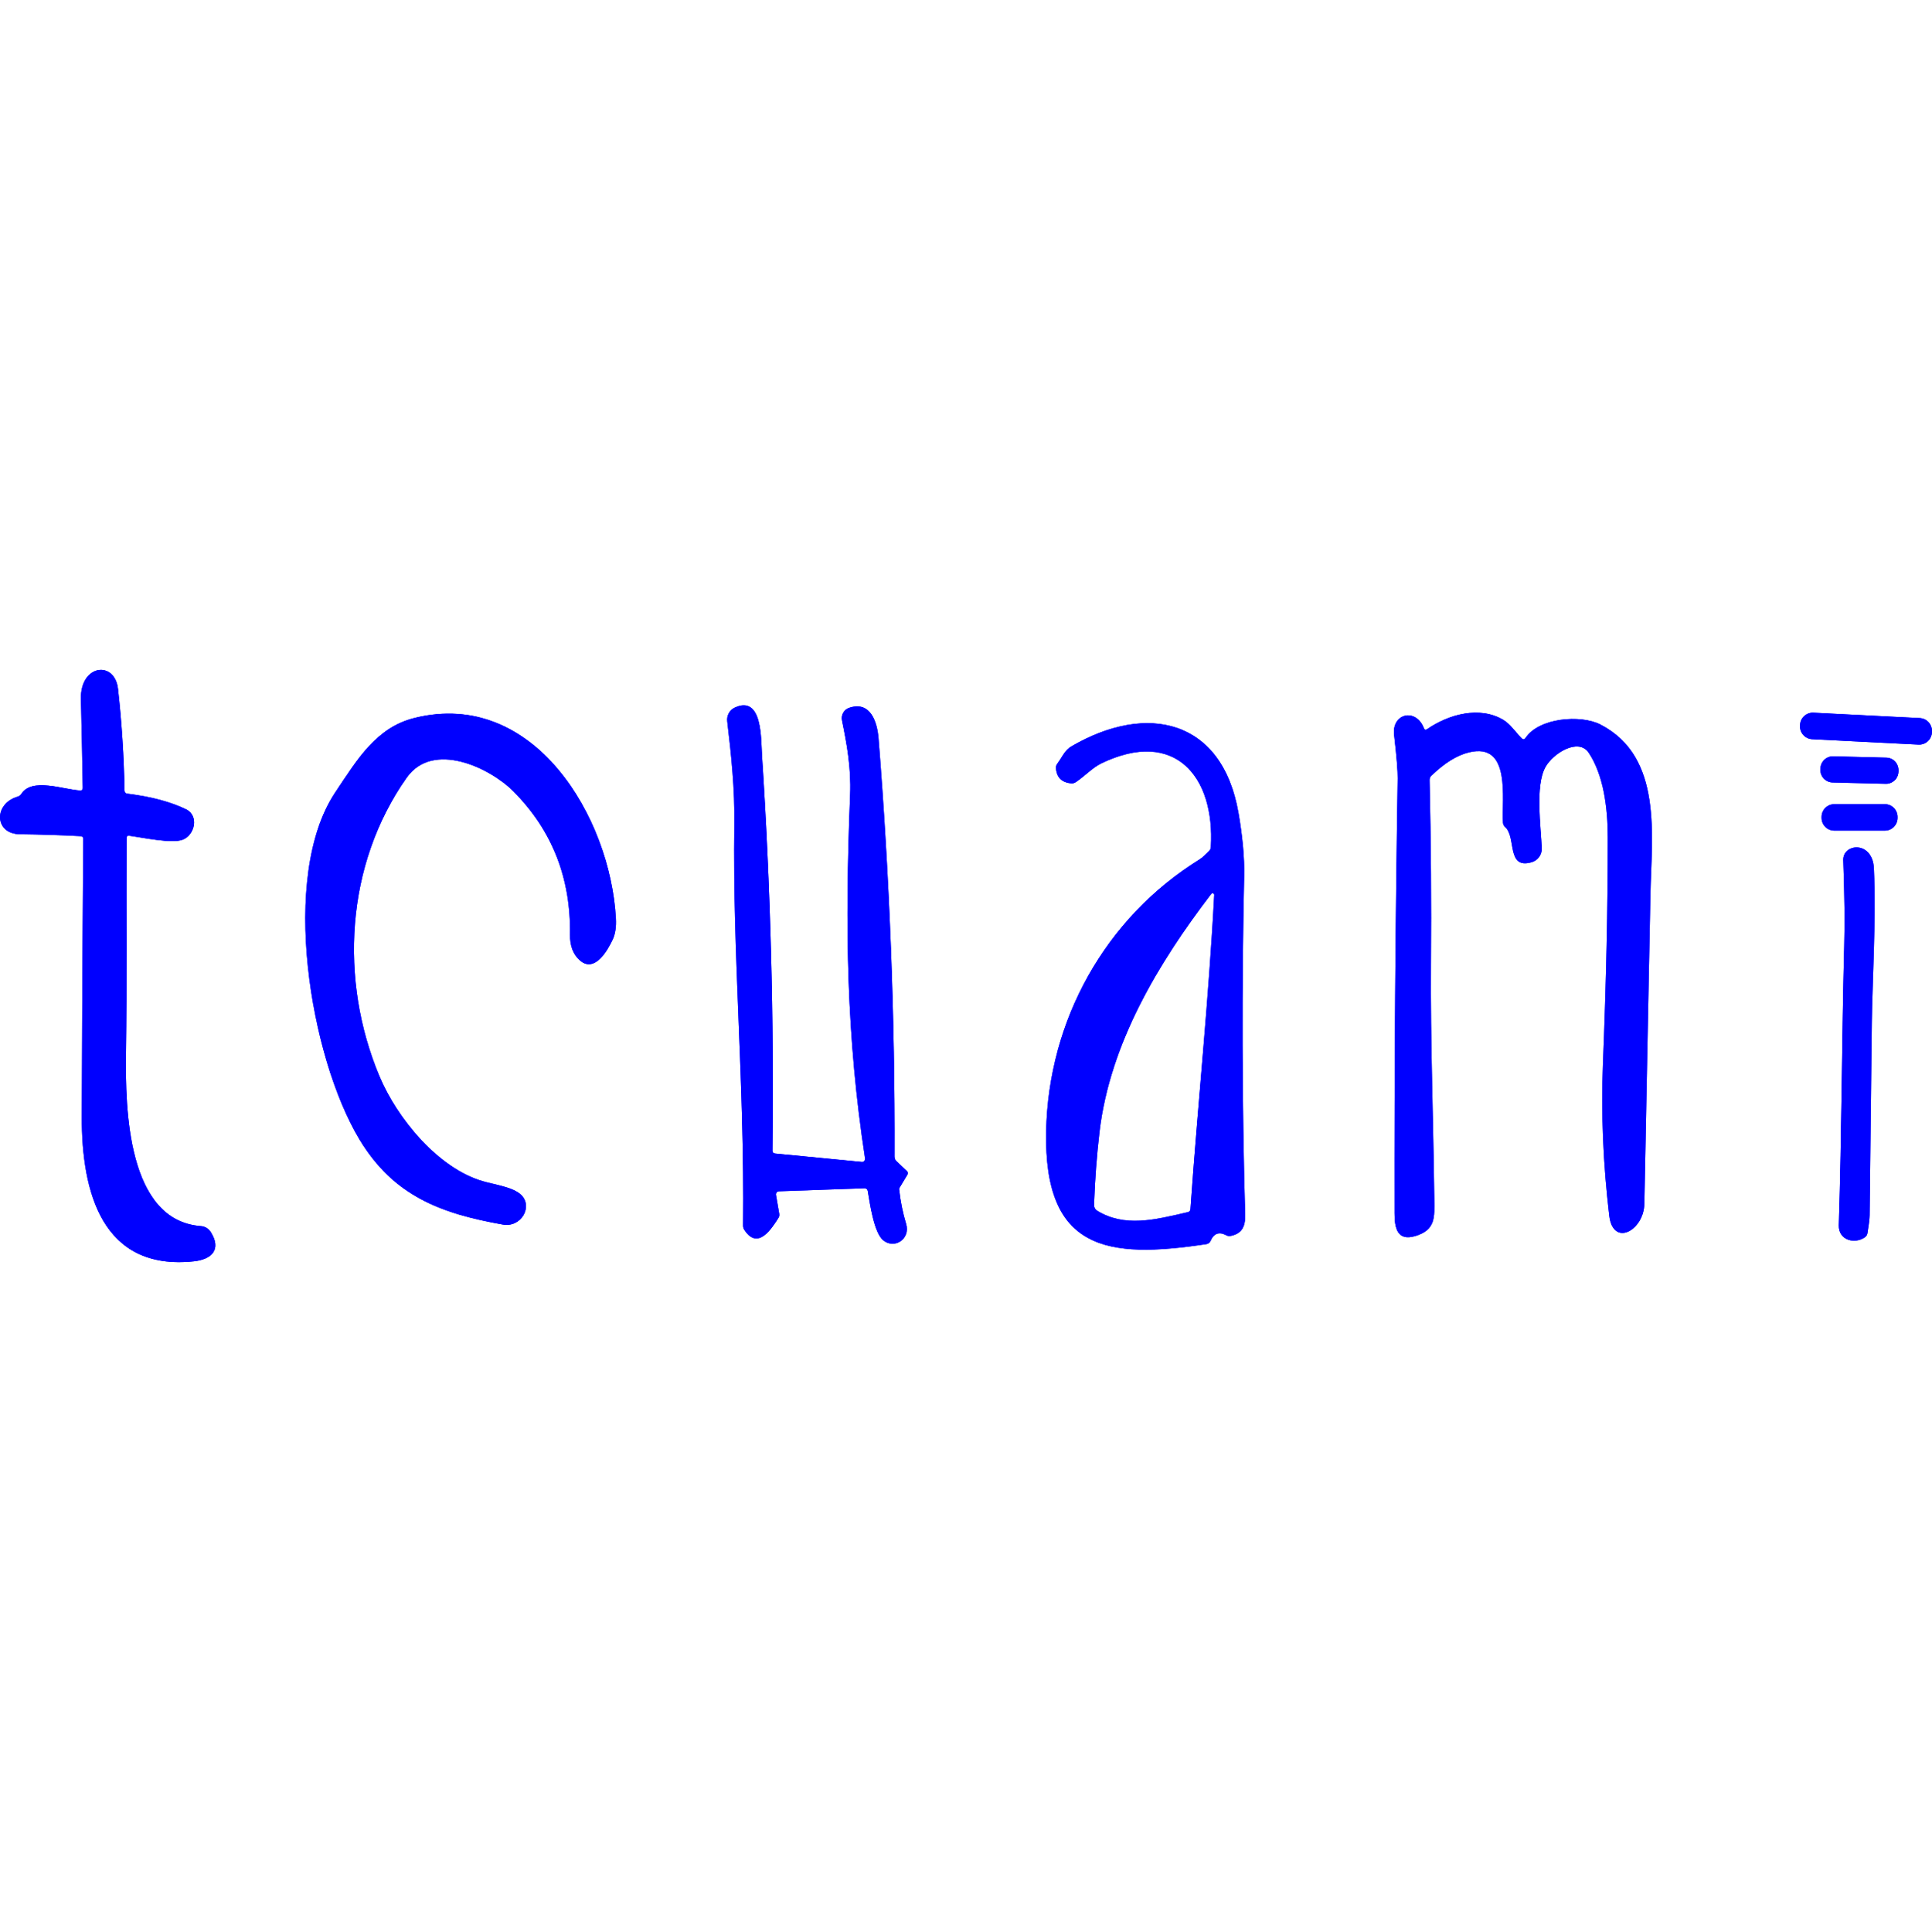 Tchami Logo Transparent Picture